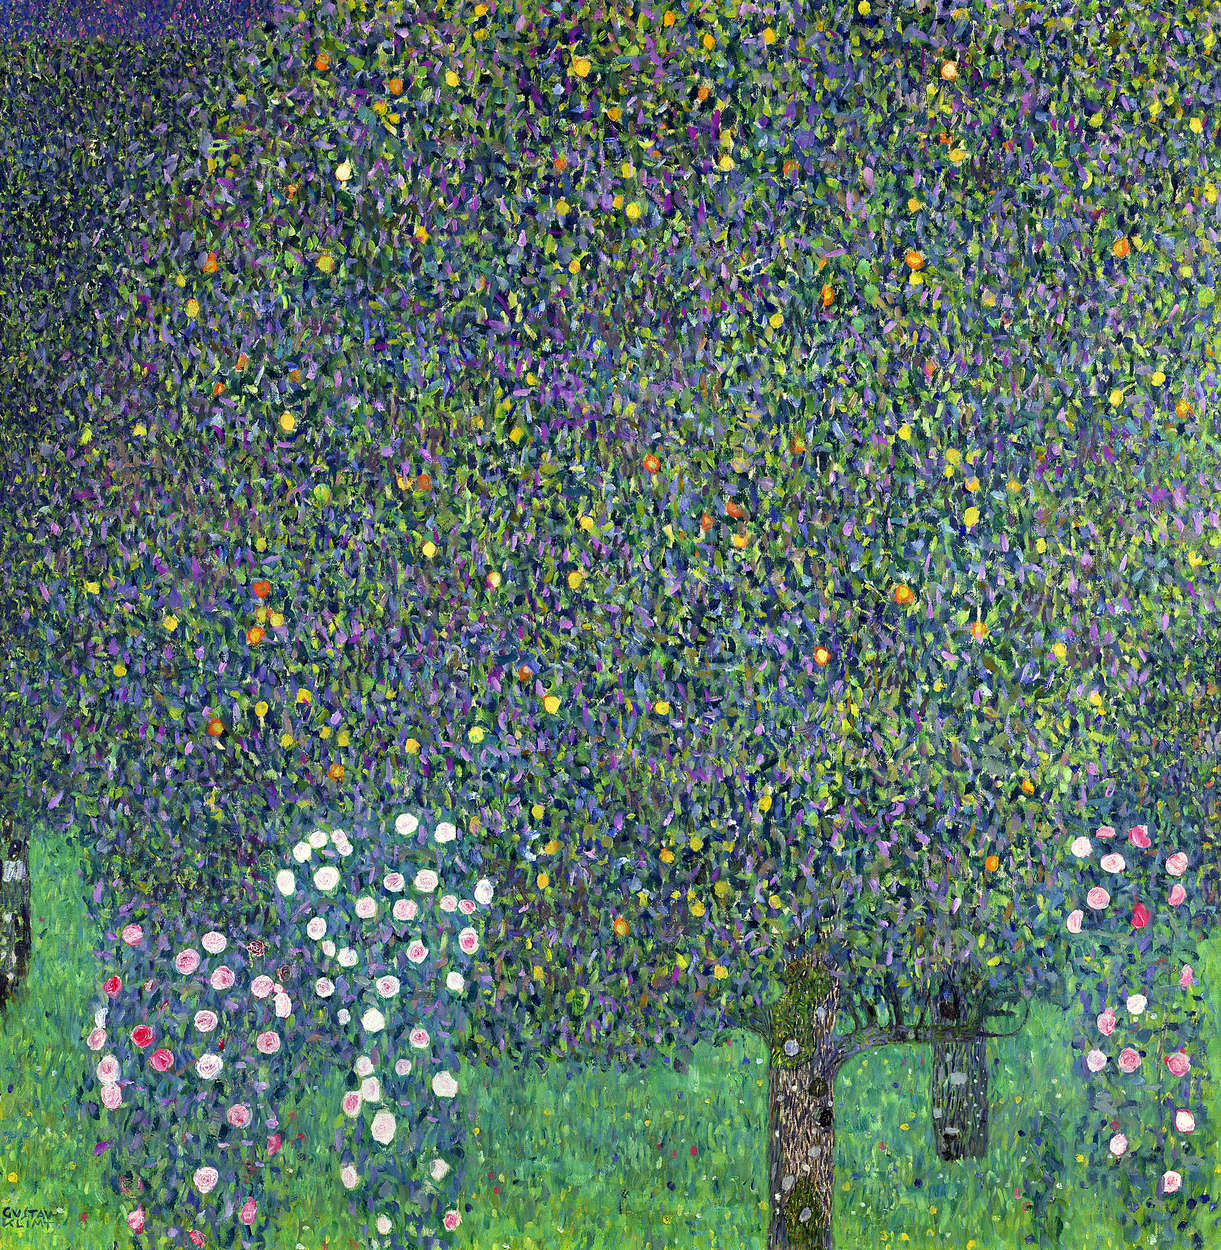             Fotomurali "Rose sotto gli alberi" di Gustav Klimt
        